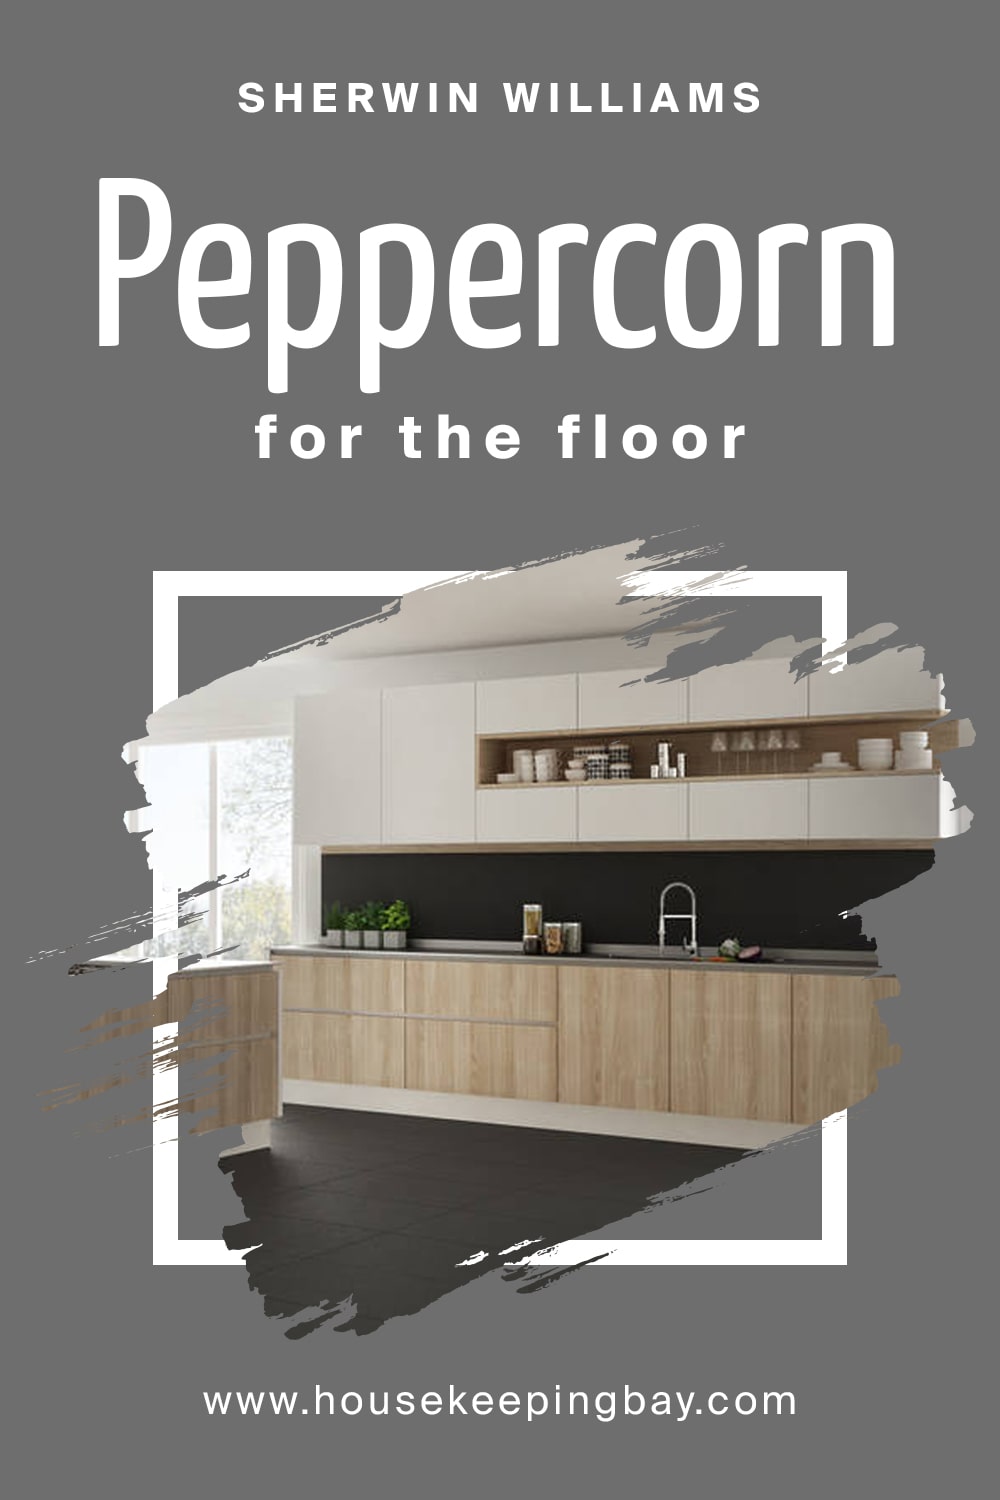 Peppercorn for the floor